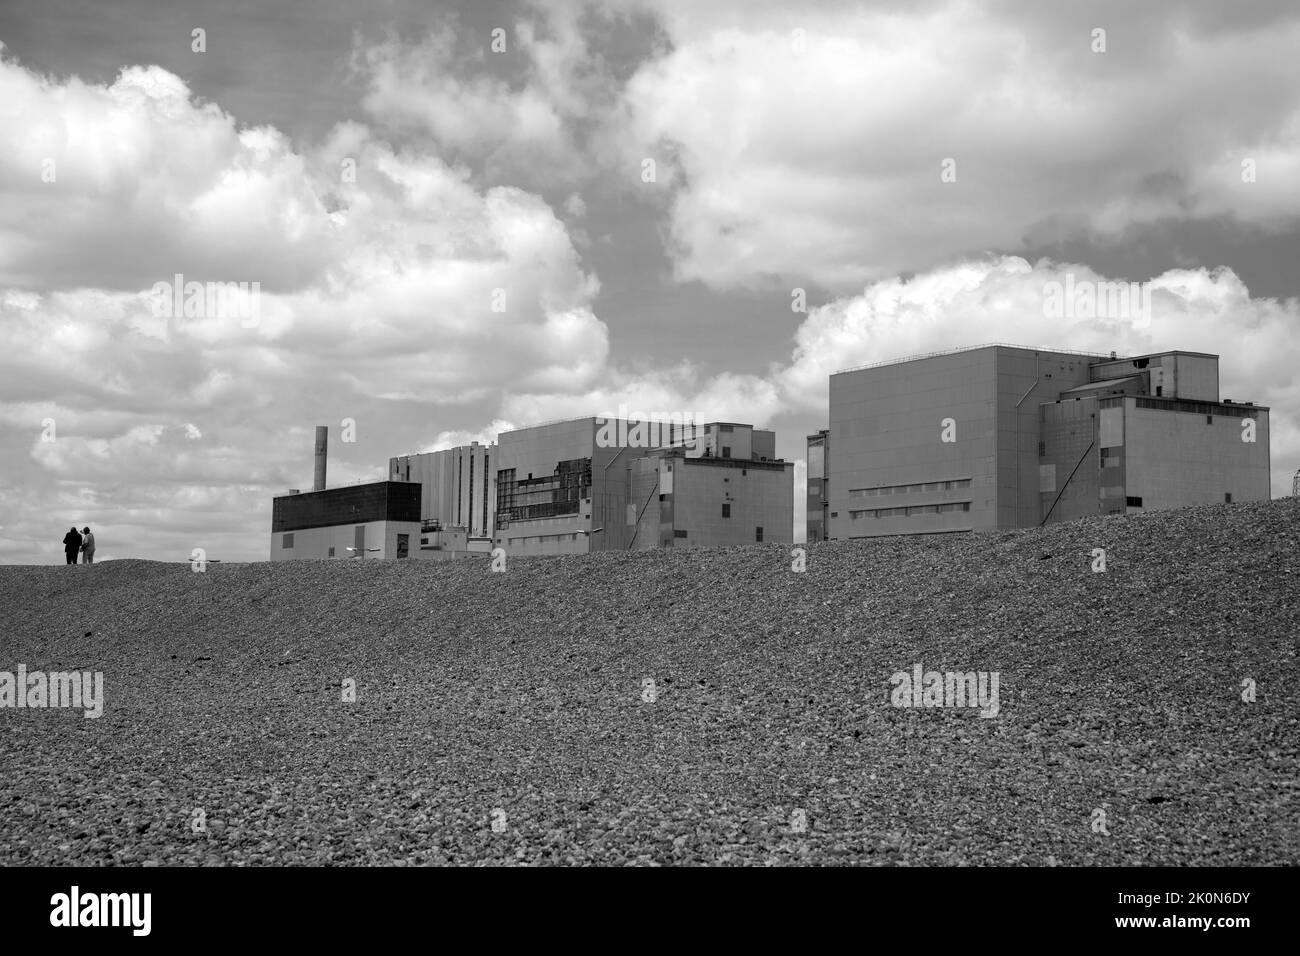 Monochrom-Bild von zwei Menschen, die am Kernkraftwerk Dungeness in Kent, England, vorbeigehen. Stockfoto